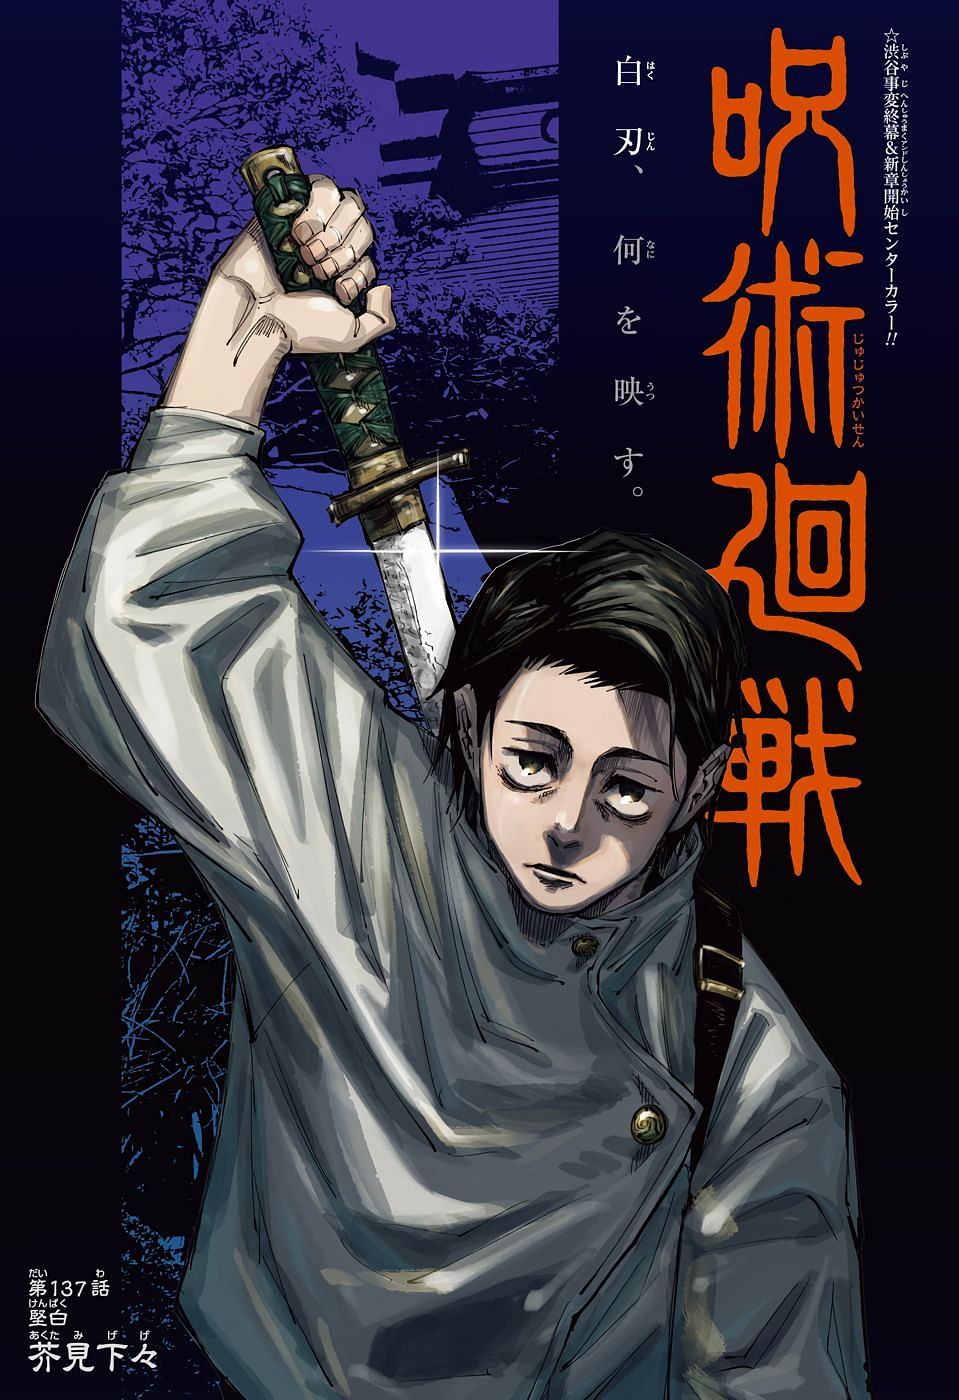 The cover page for Jujutsu Kaisen Chapter 137, featuring Yuta Okkotsu and his katana (Image via Shueisha Shonen Jump)